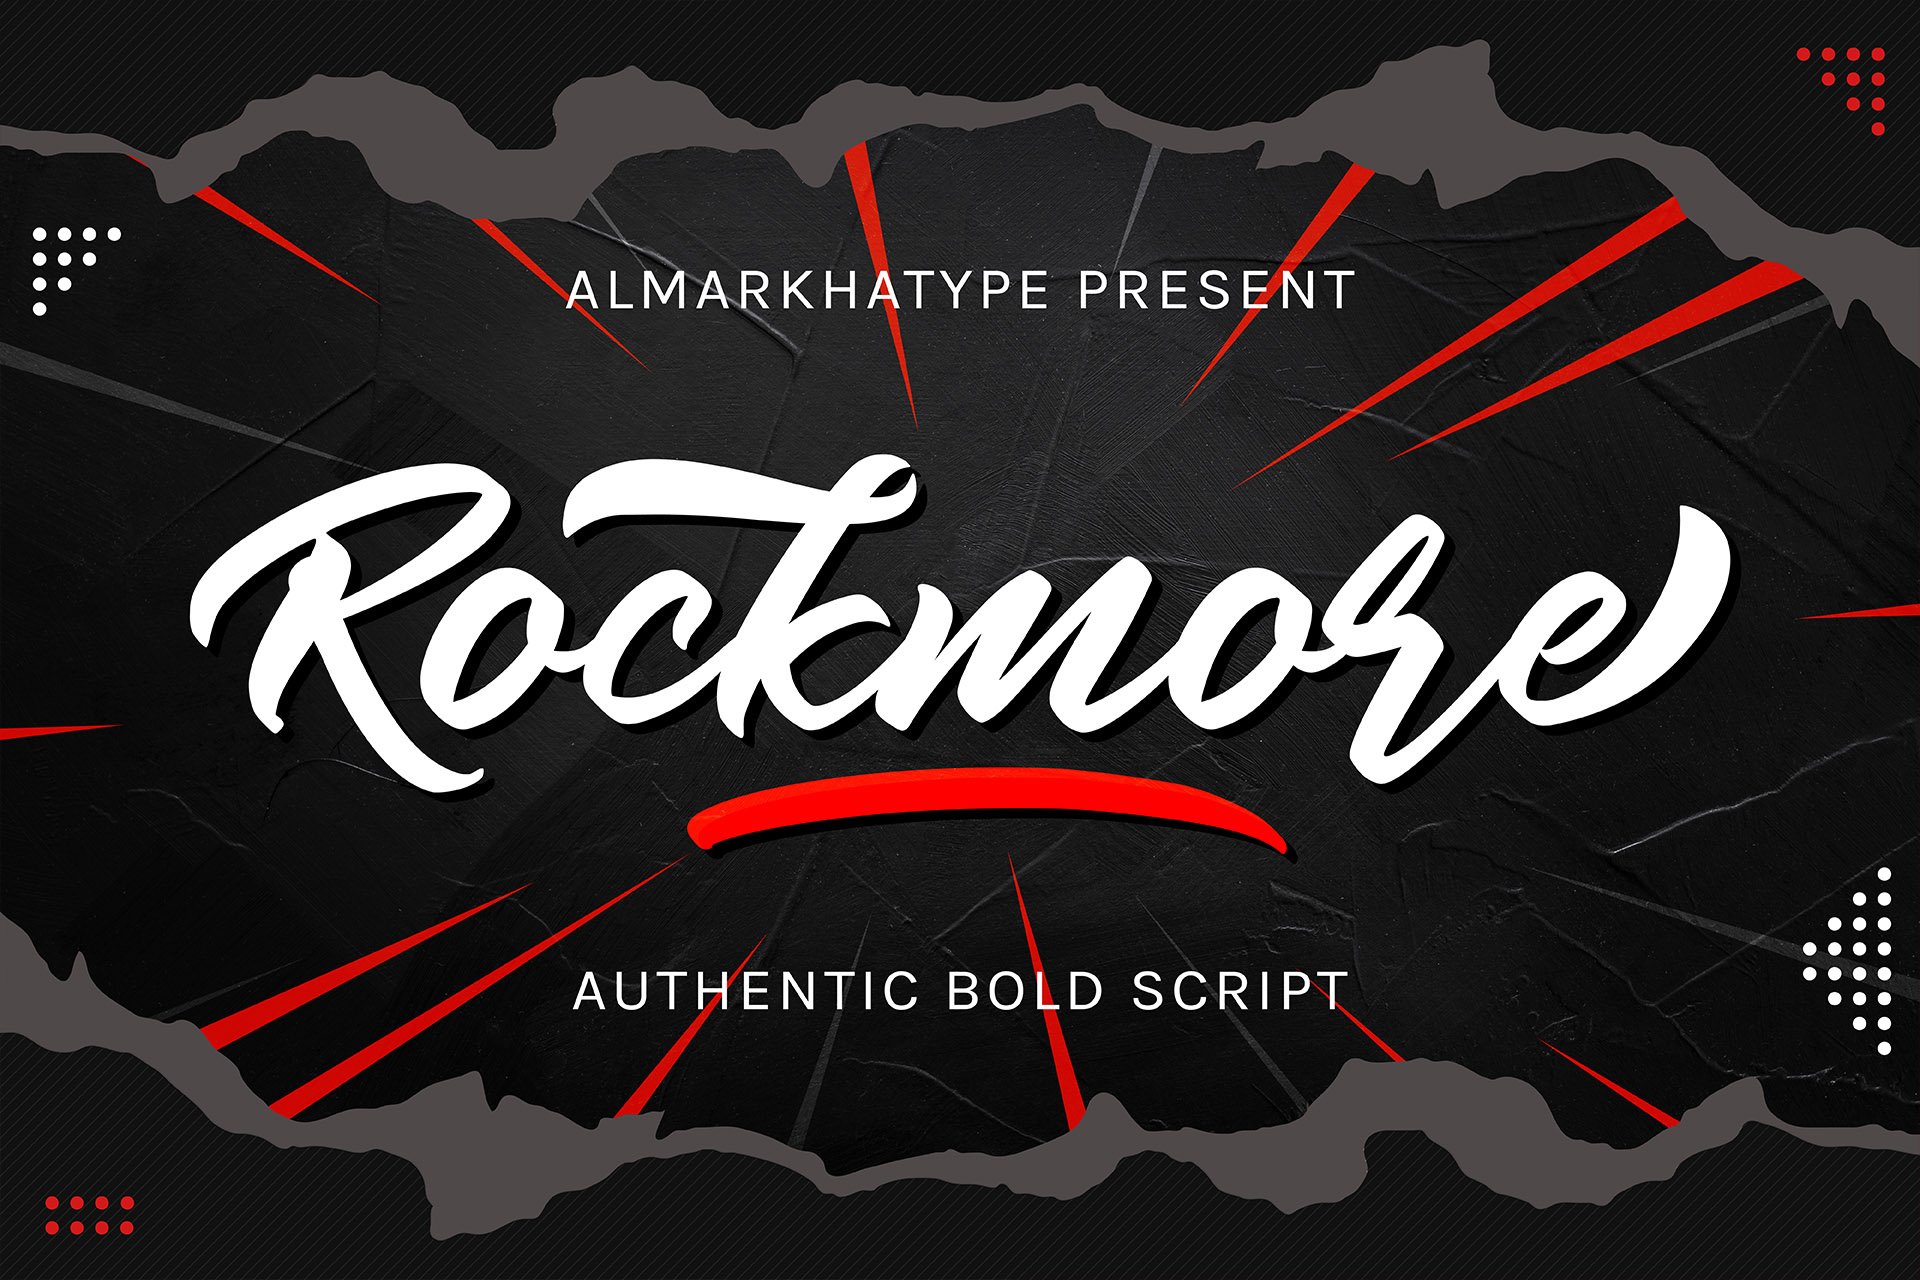 Rockmore - Authentic Bold Script cover image.